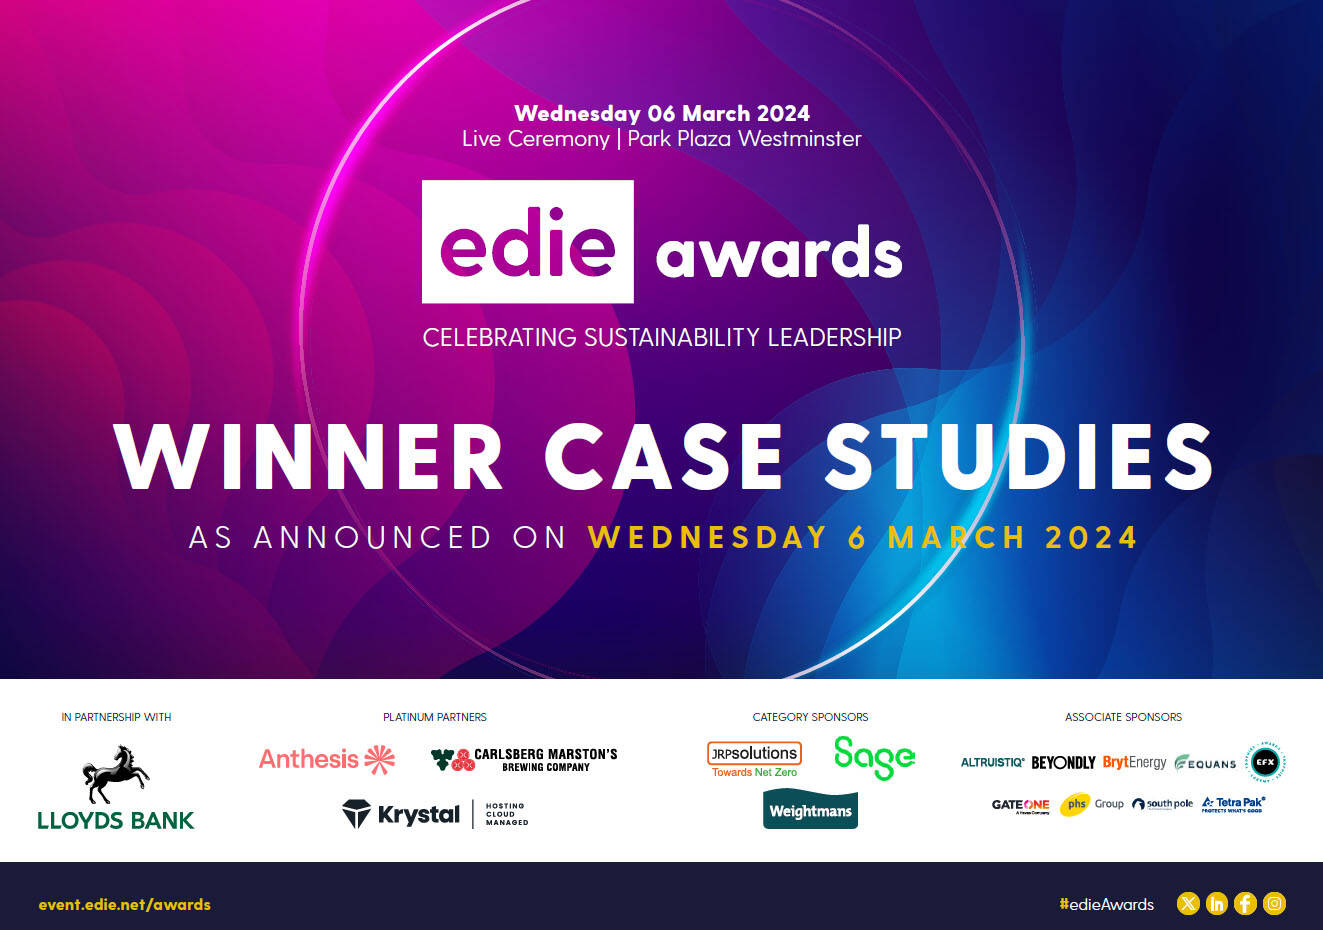 edie Awards 2024: Winners case studies